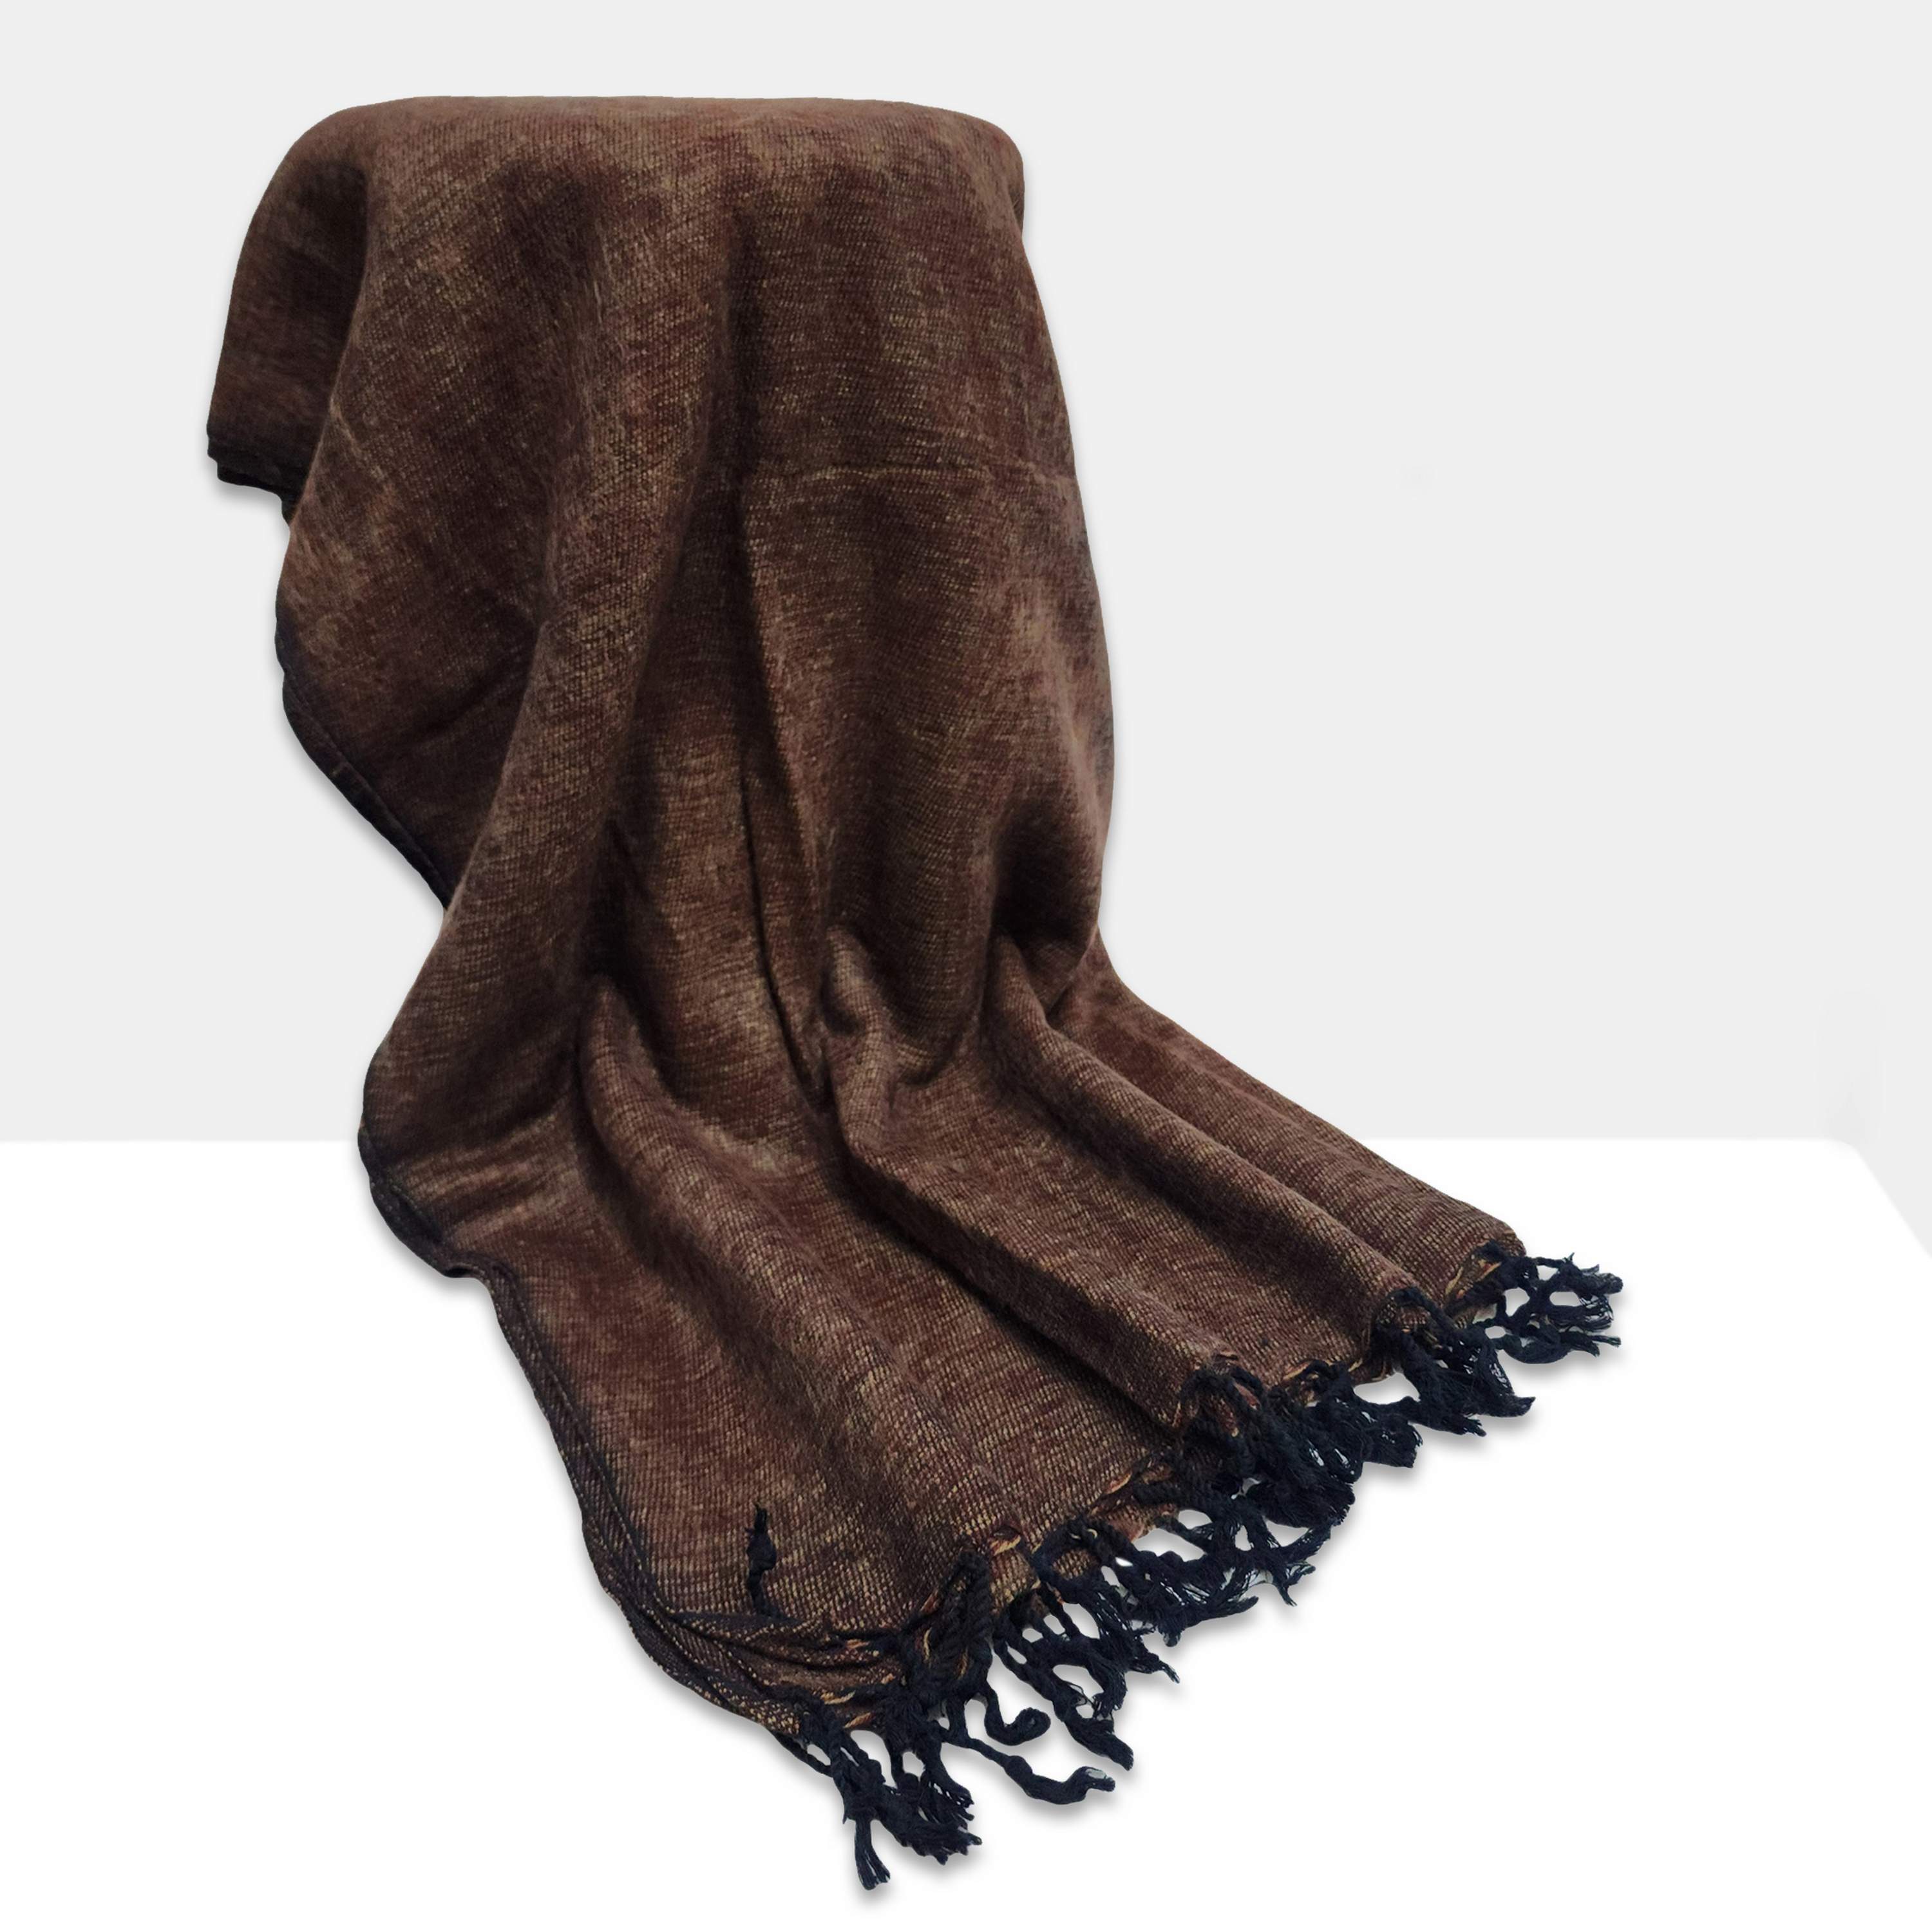 Yak Wool Blanket, Nepali Acrylic Hand Loom Blanket, Color coffee Brown